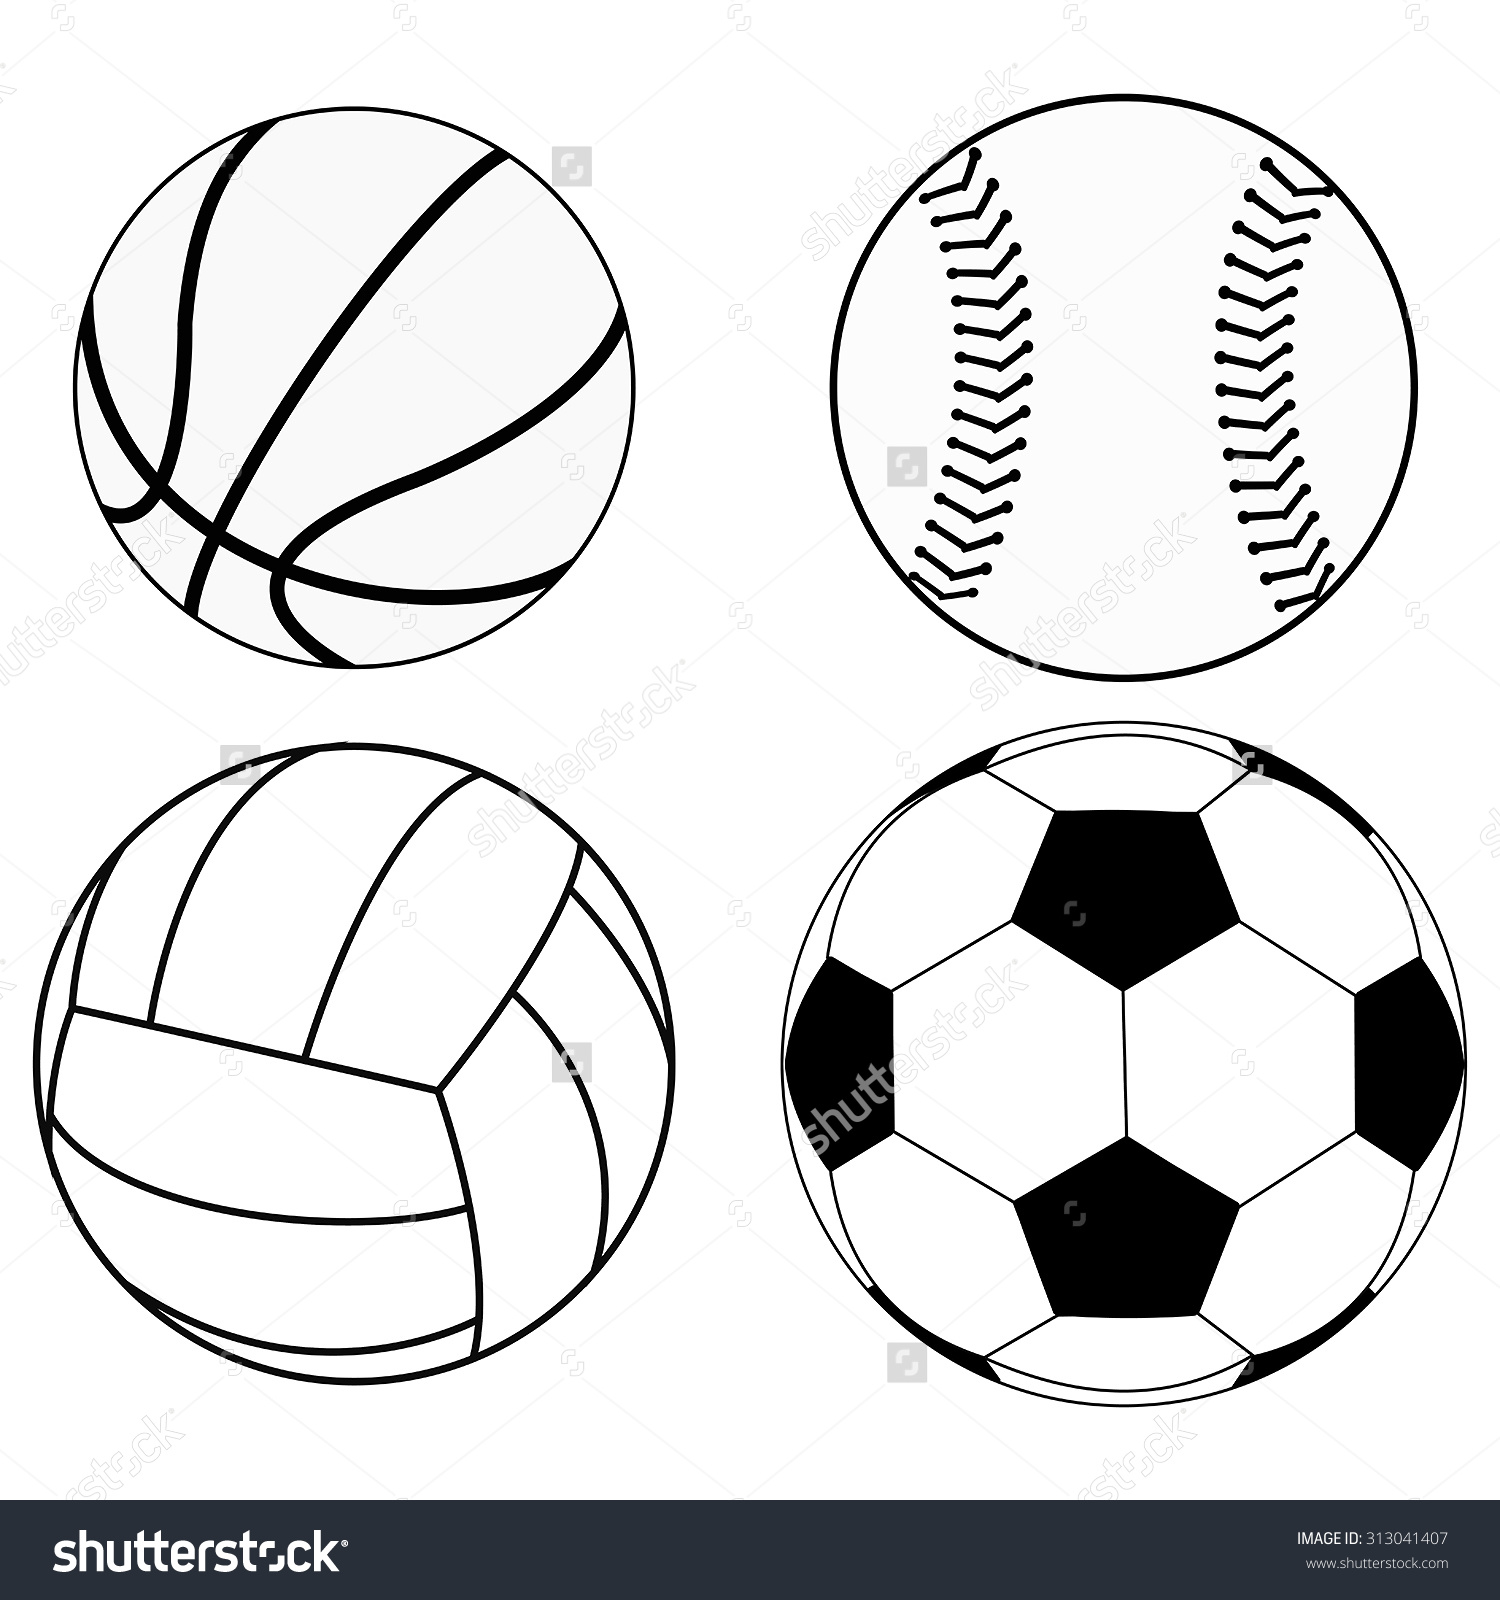 Срисовки футбольных баскетбольных мячей